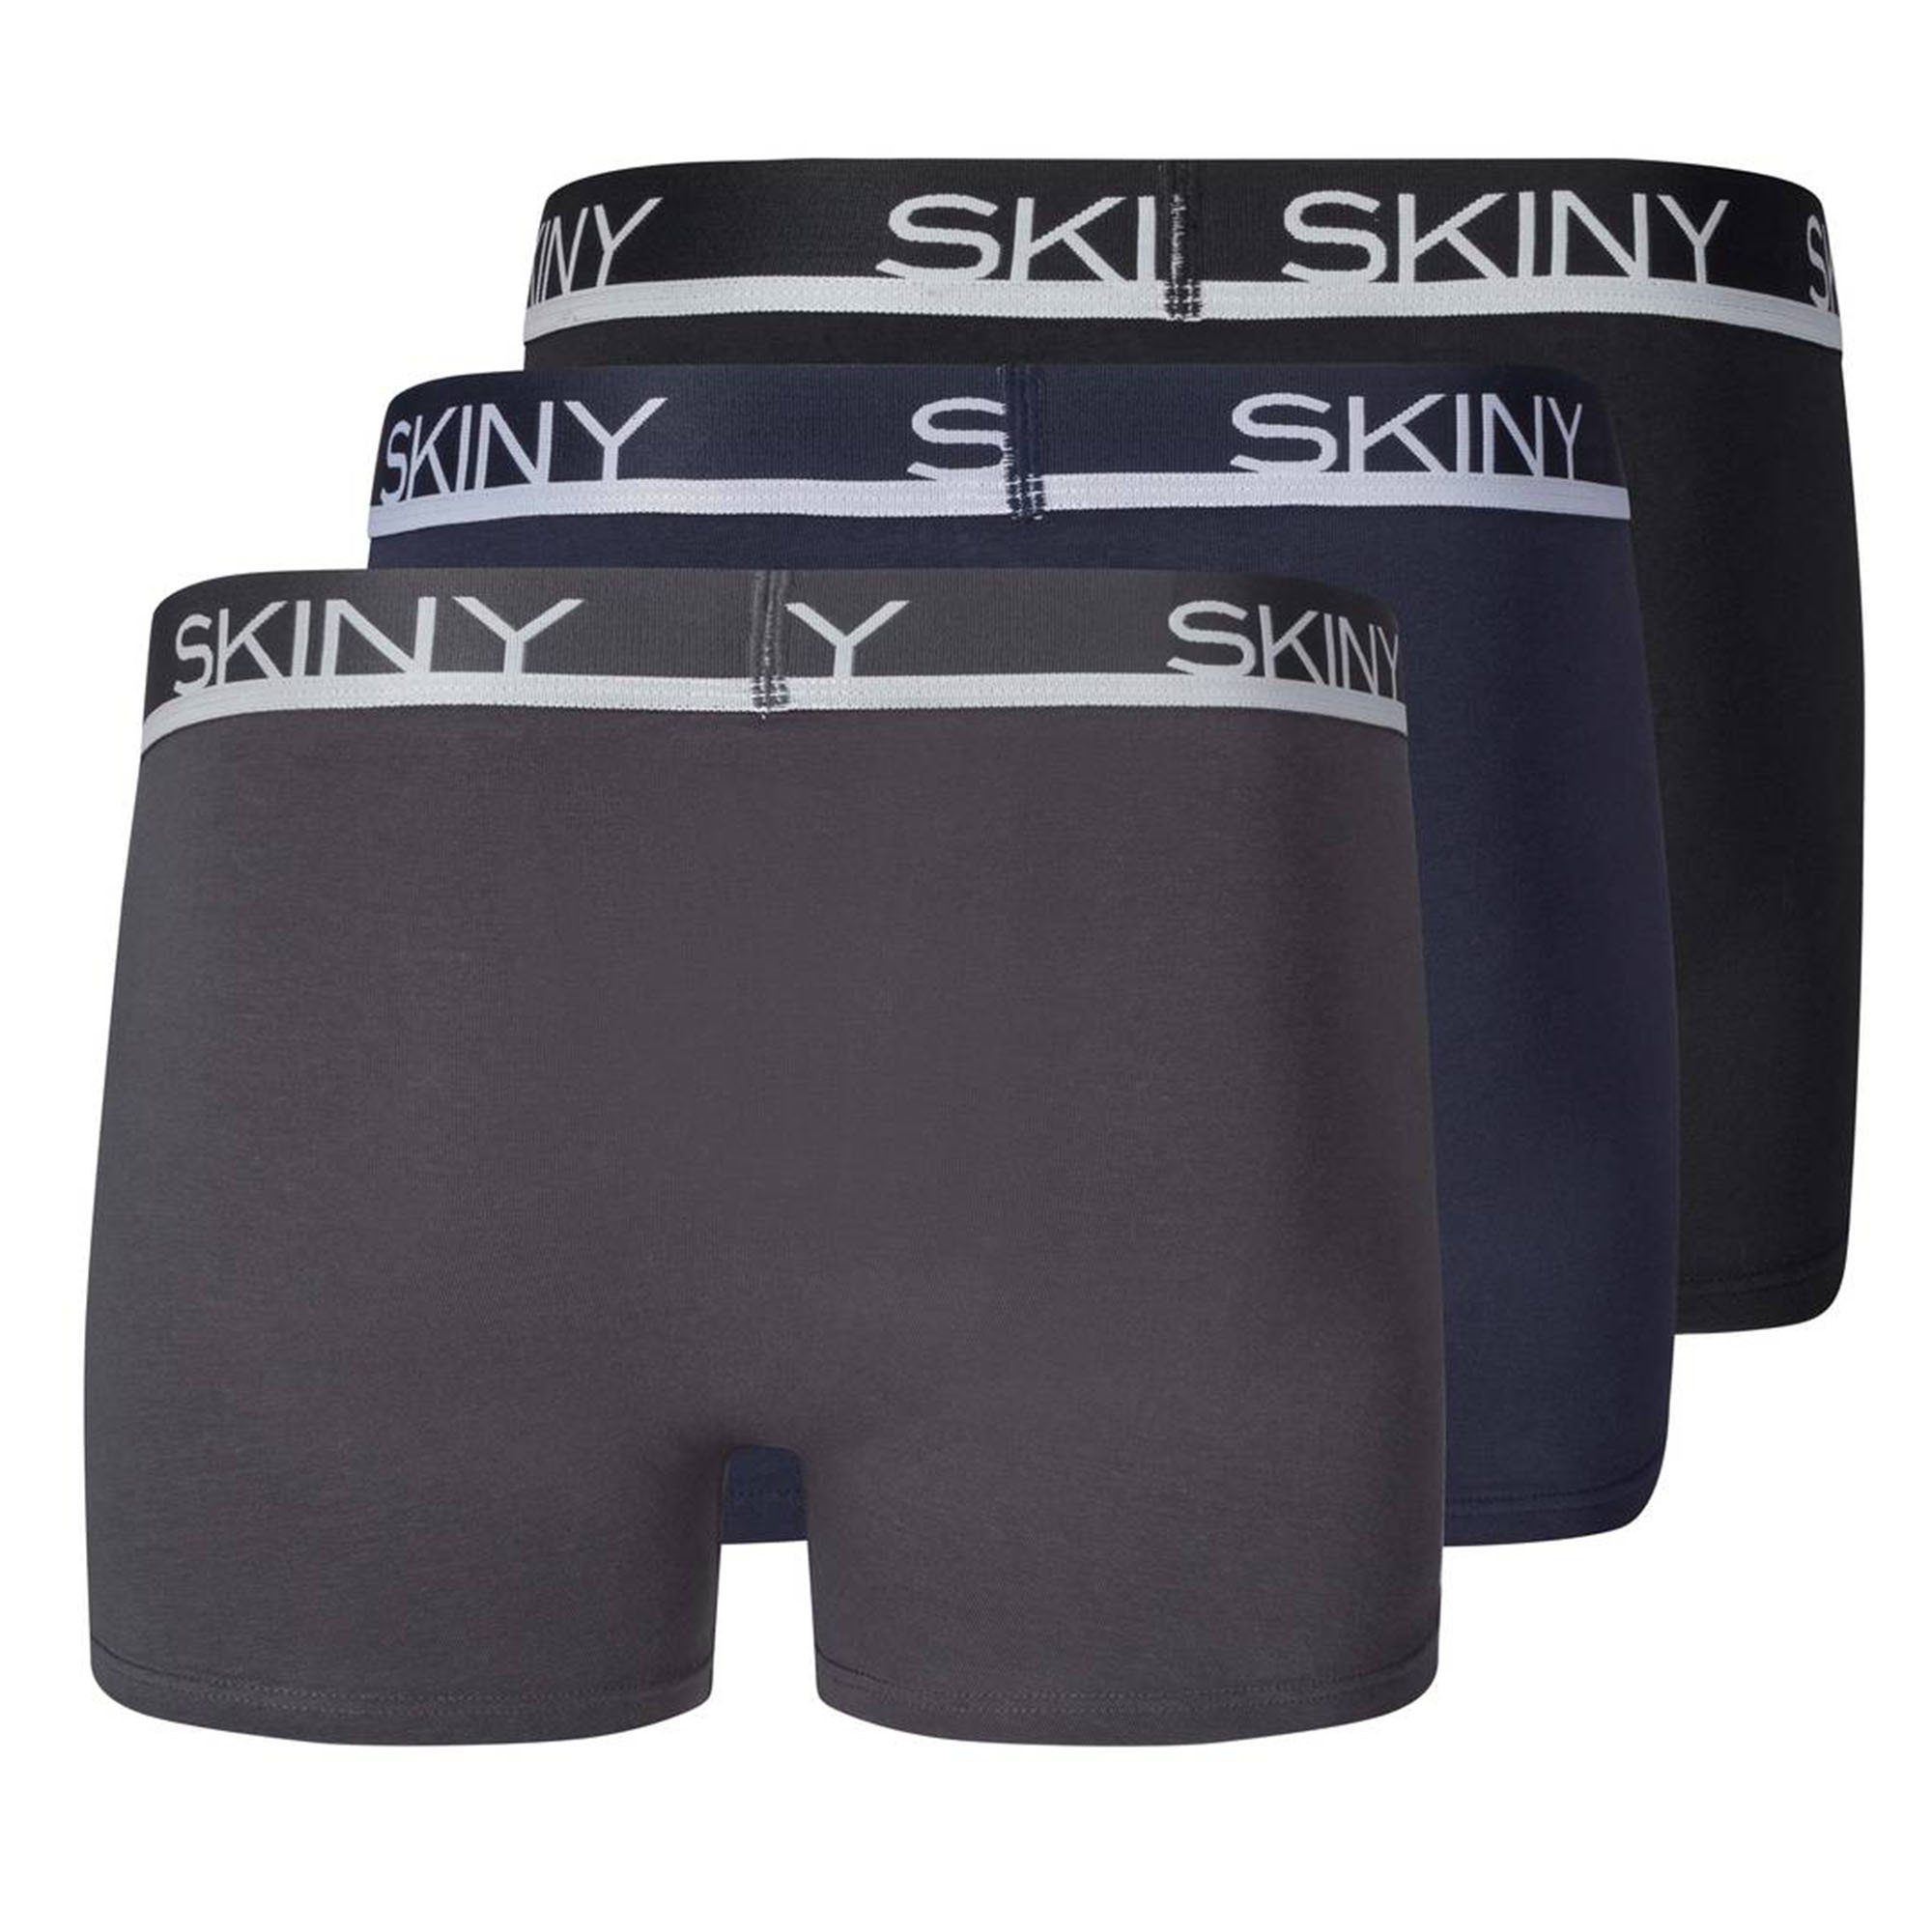 Grau/Blau/Schwarz Boxer Boxer - Trunks, Herren 3er Pants Shorts Skiny Pack